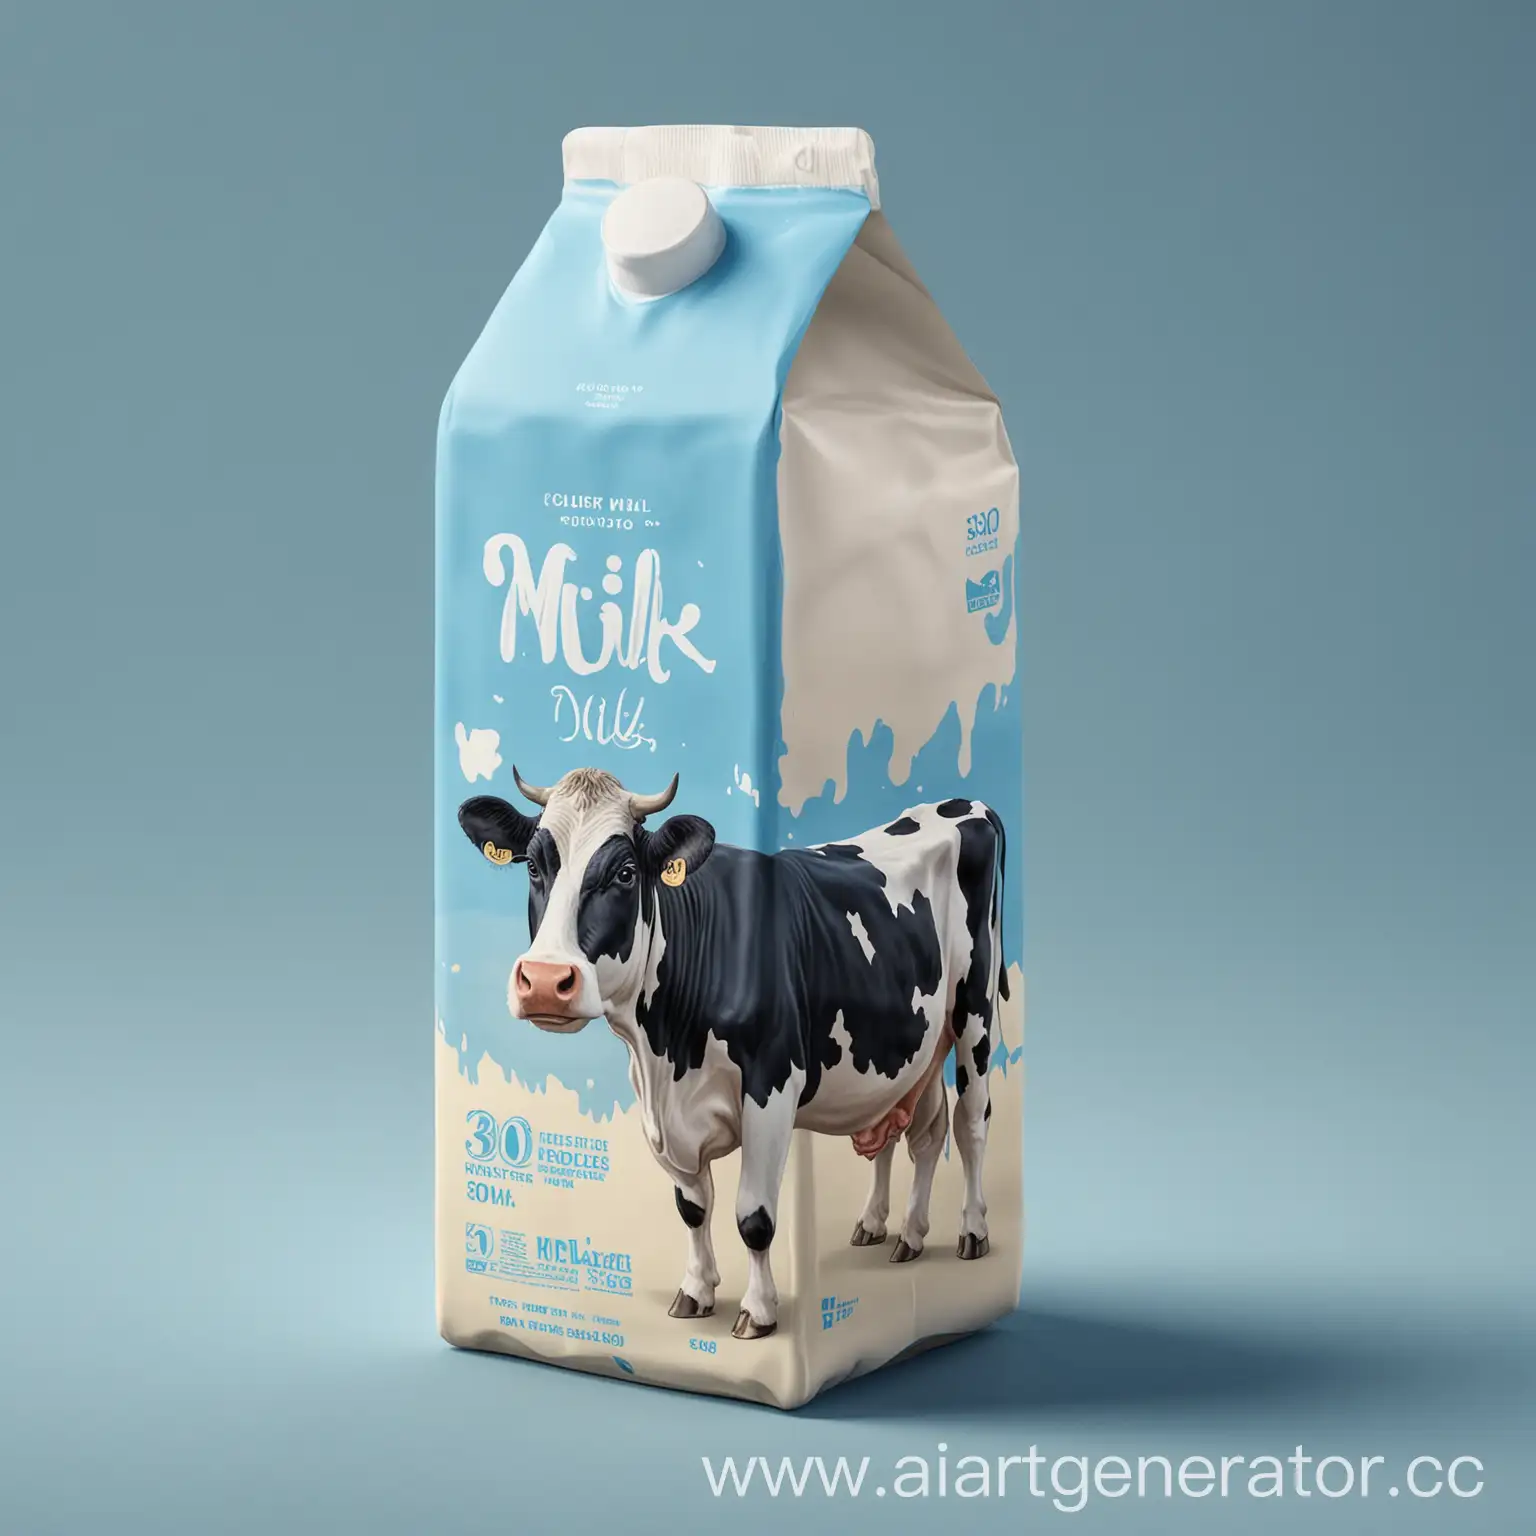 Упаковка молока. Цвет фона - голубой. Текст - молоко, 300 грамм. На упаковке должна быть изображена корова. Упаковка должна быть реалистичной и 3d.